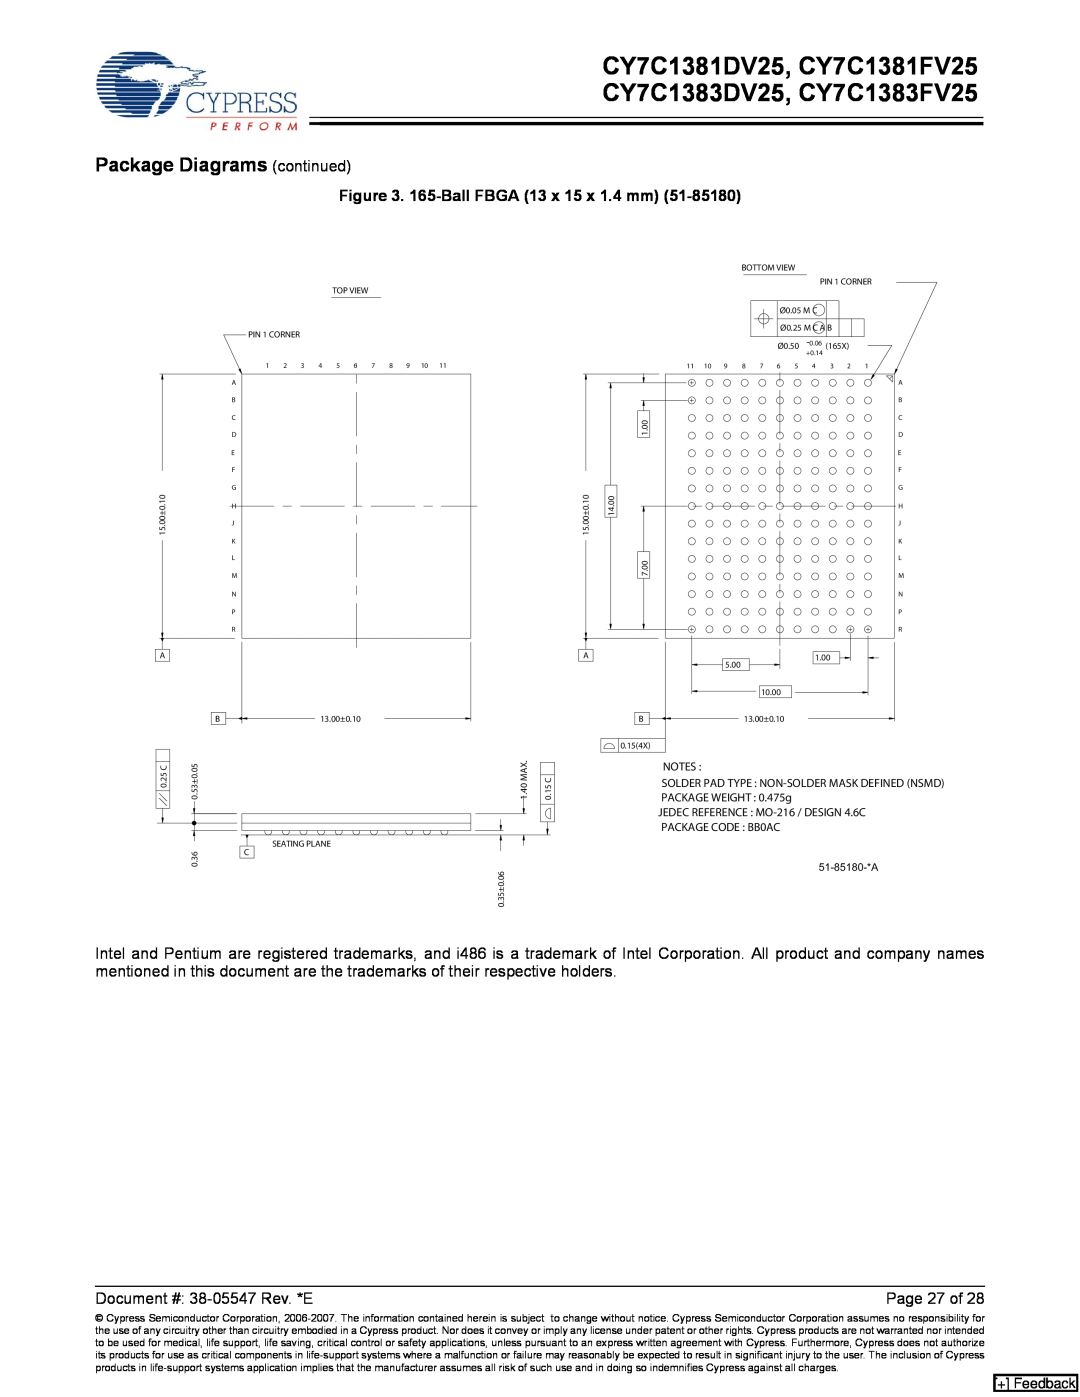 Cypress manual CY7C1381DV25, CY7C1381FV25 CY7C1383DV25, CY7C1383FV25, Package Diagrams continued, Page 27 of, + Feedback 